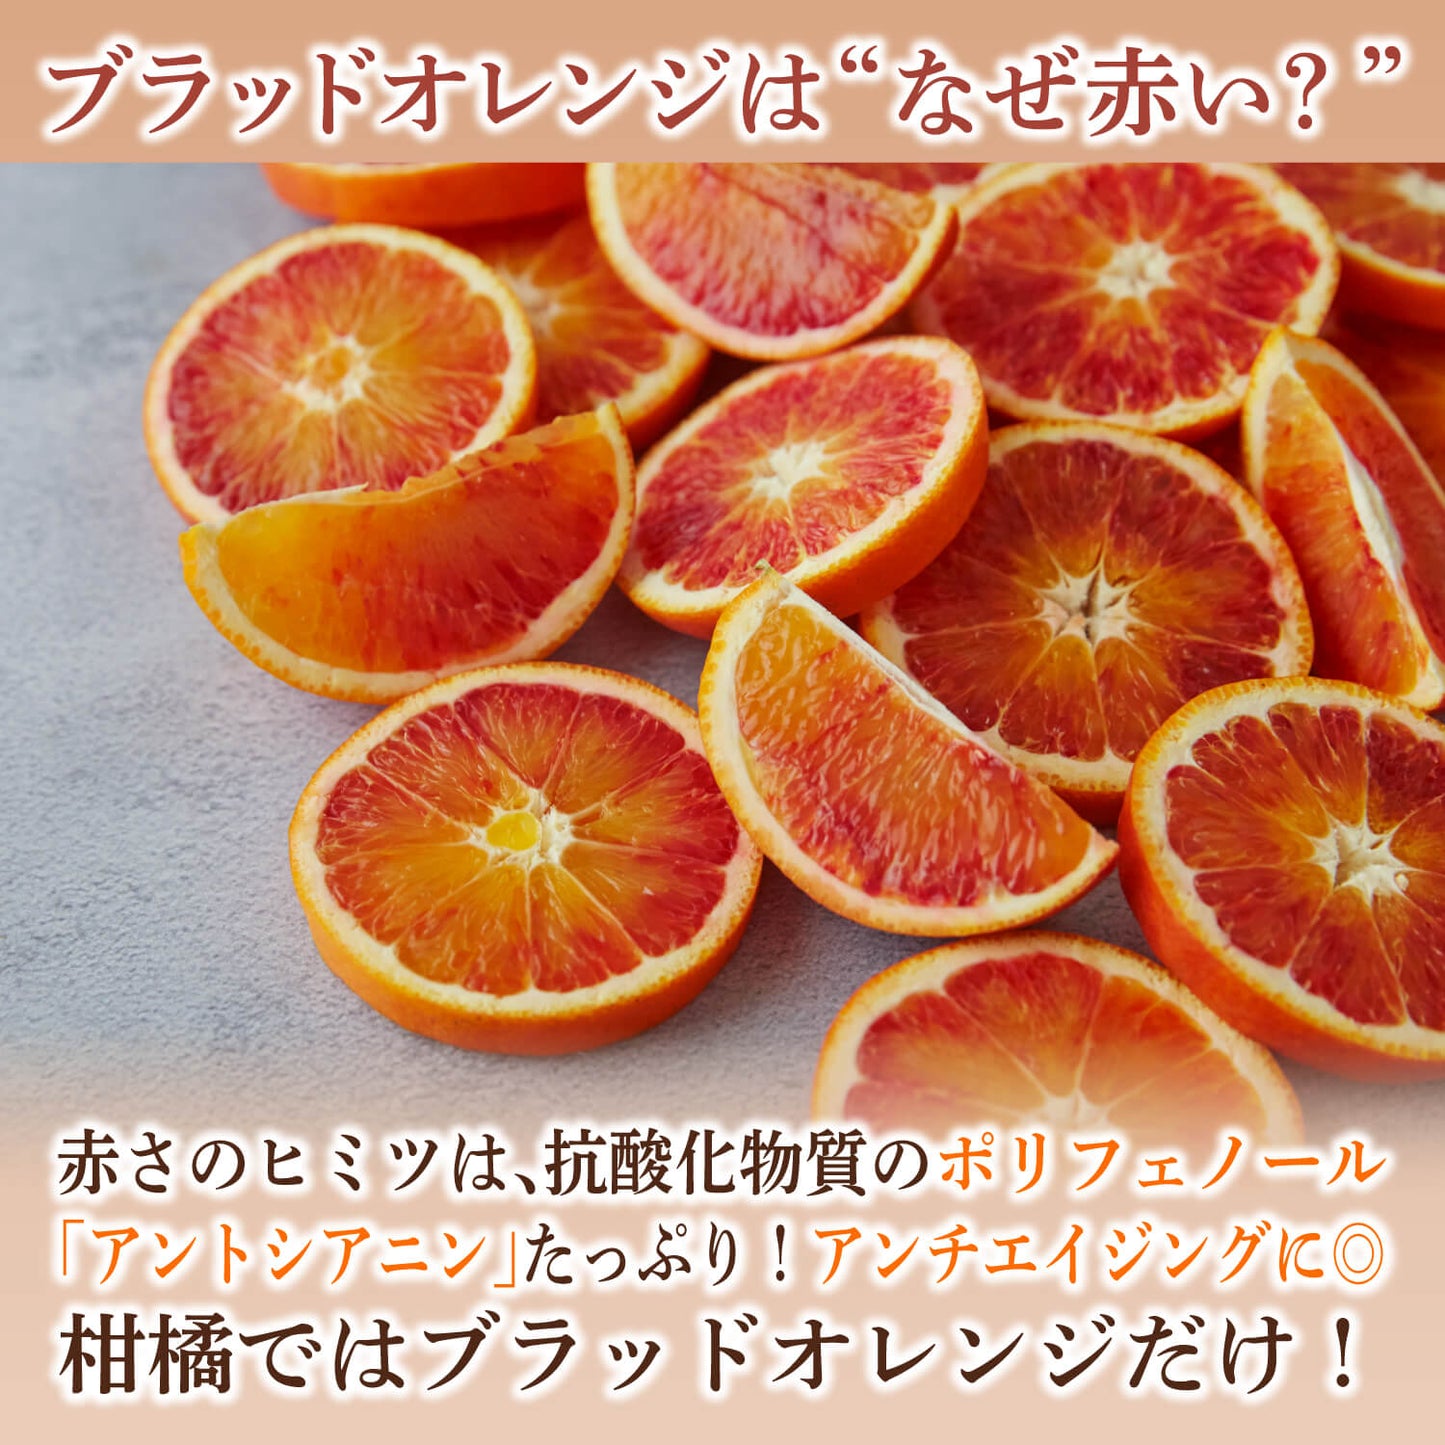 【ギフトセット】ブラッドオレンジフルーツチョコレート 2袋